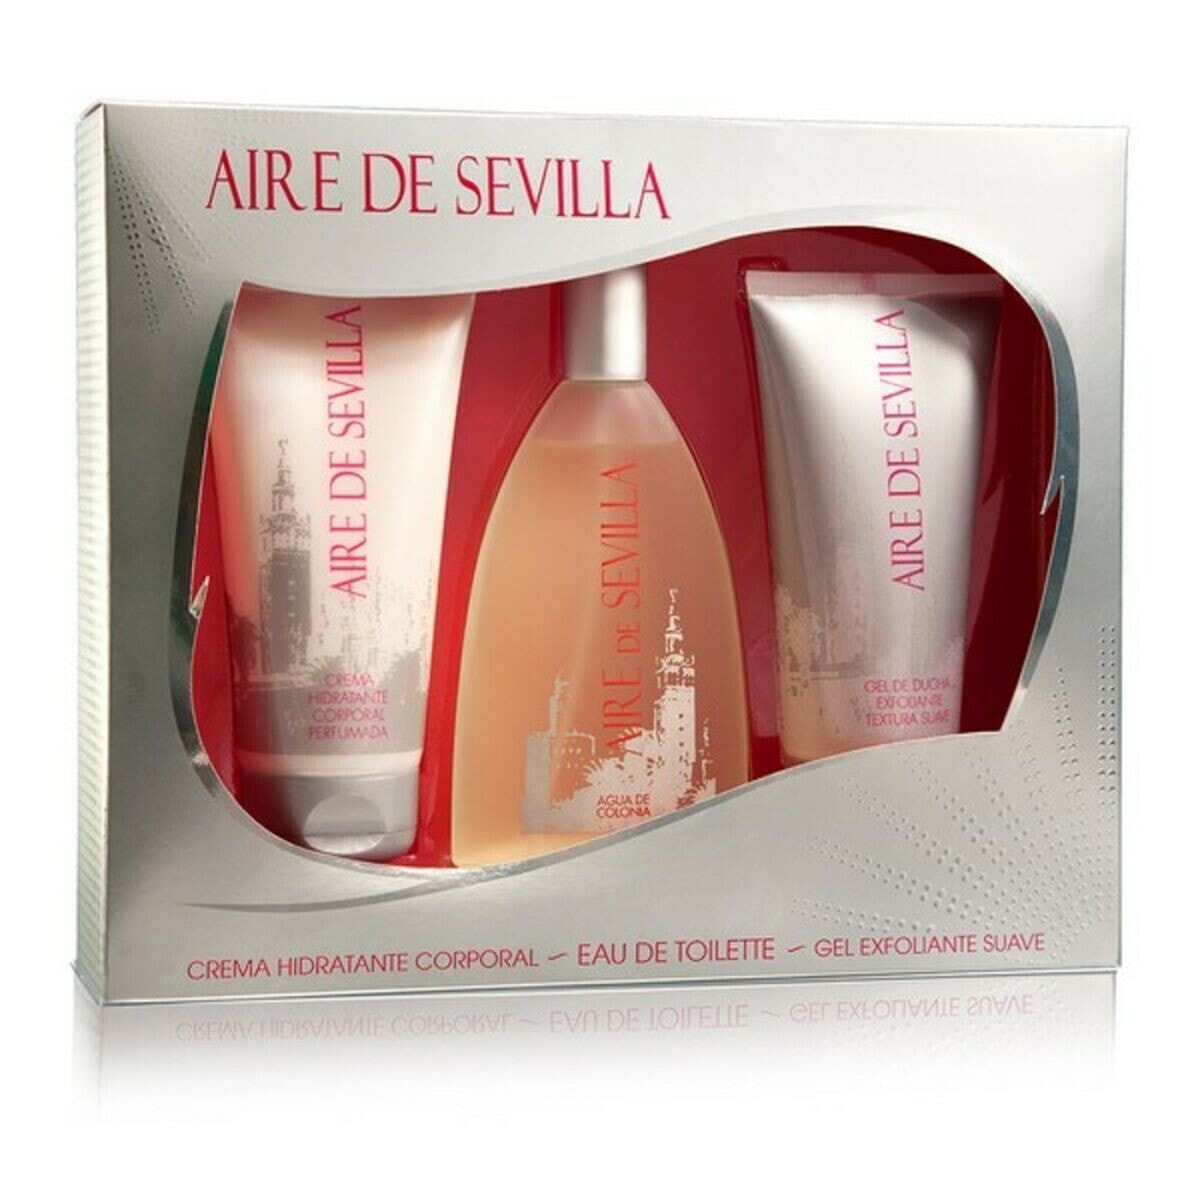 Женский парфюмерный набор Aire Sevilla Clasica Aire Sevilla (3 pcs) 3 Предметы